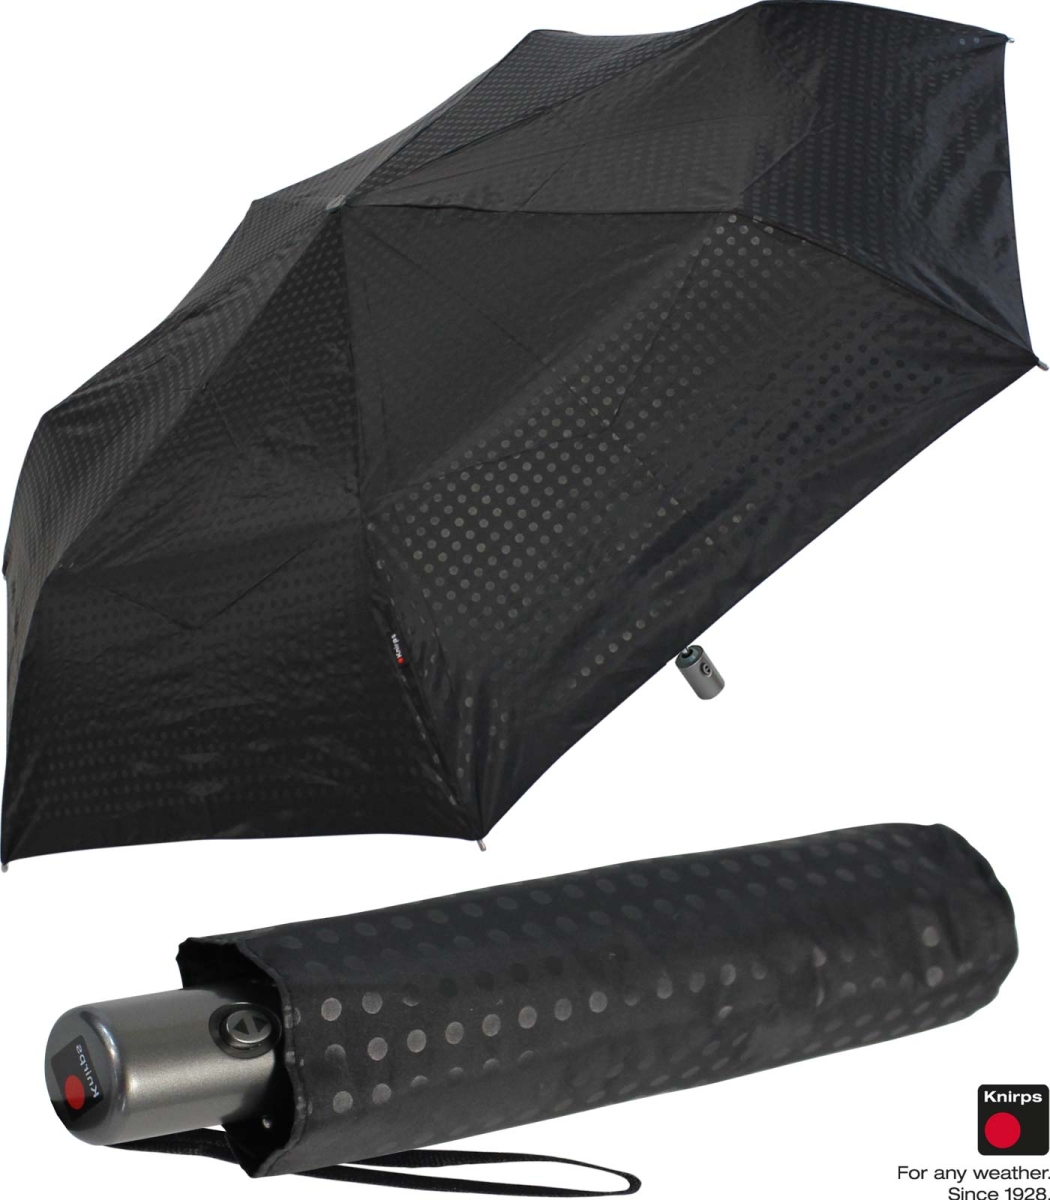 Knirps Regenschirm Slim mit klein - leicht - mat spot und Auf-Zu Duomatic Automatik